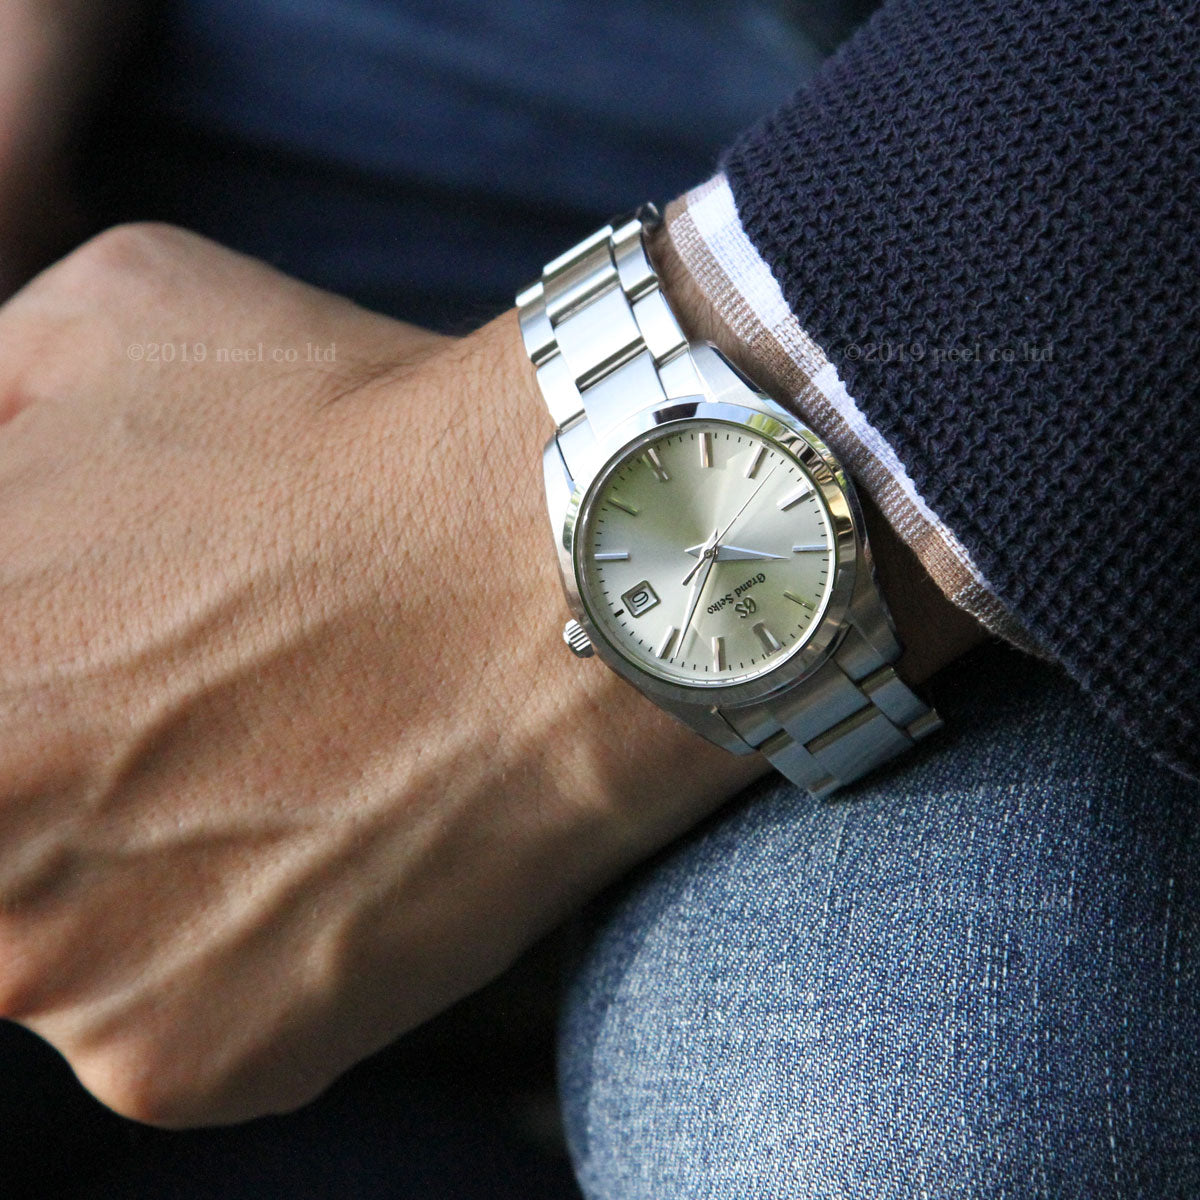 グランドセイコー GRAND SEIKO 腕時計 メンズ レディース SBGX263 STGF265 ペアモデル【正規品】【36回無金利ローン】